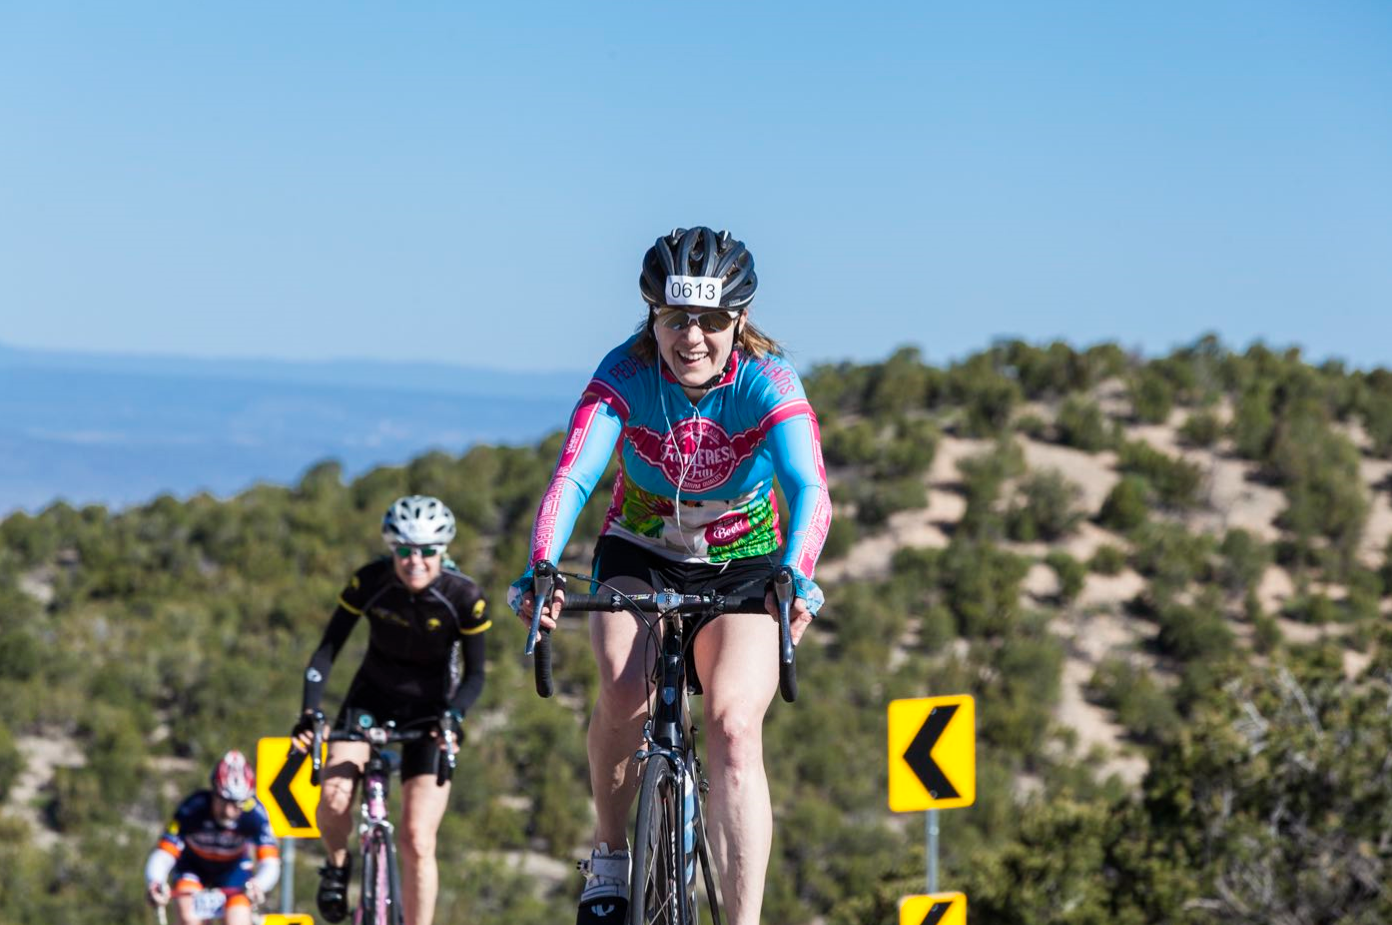 Petualangan Roda Dua Menanti:Bersepeda Santa Fe County 